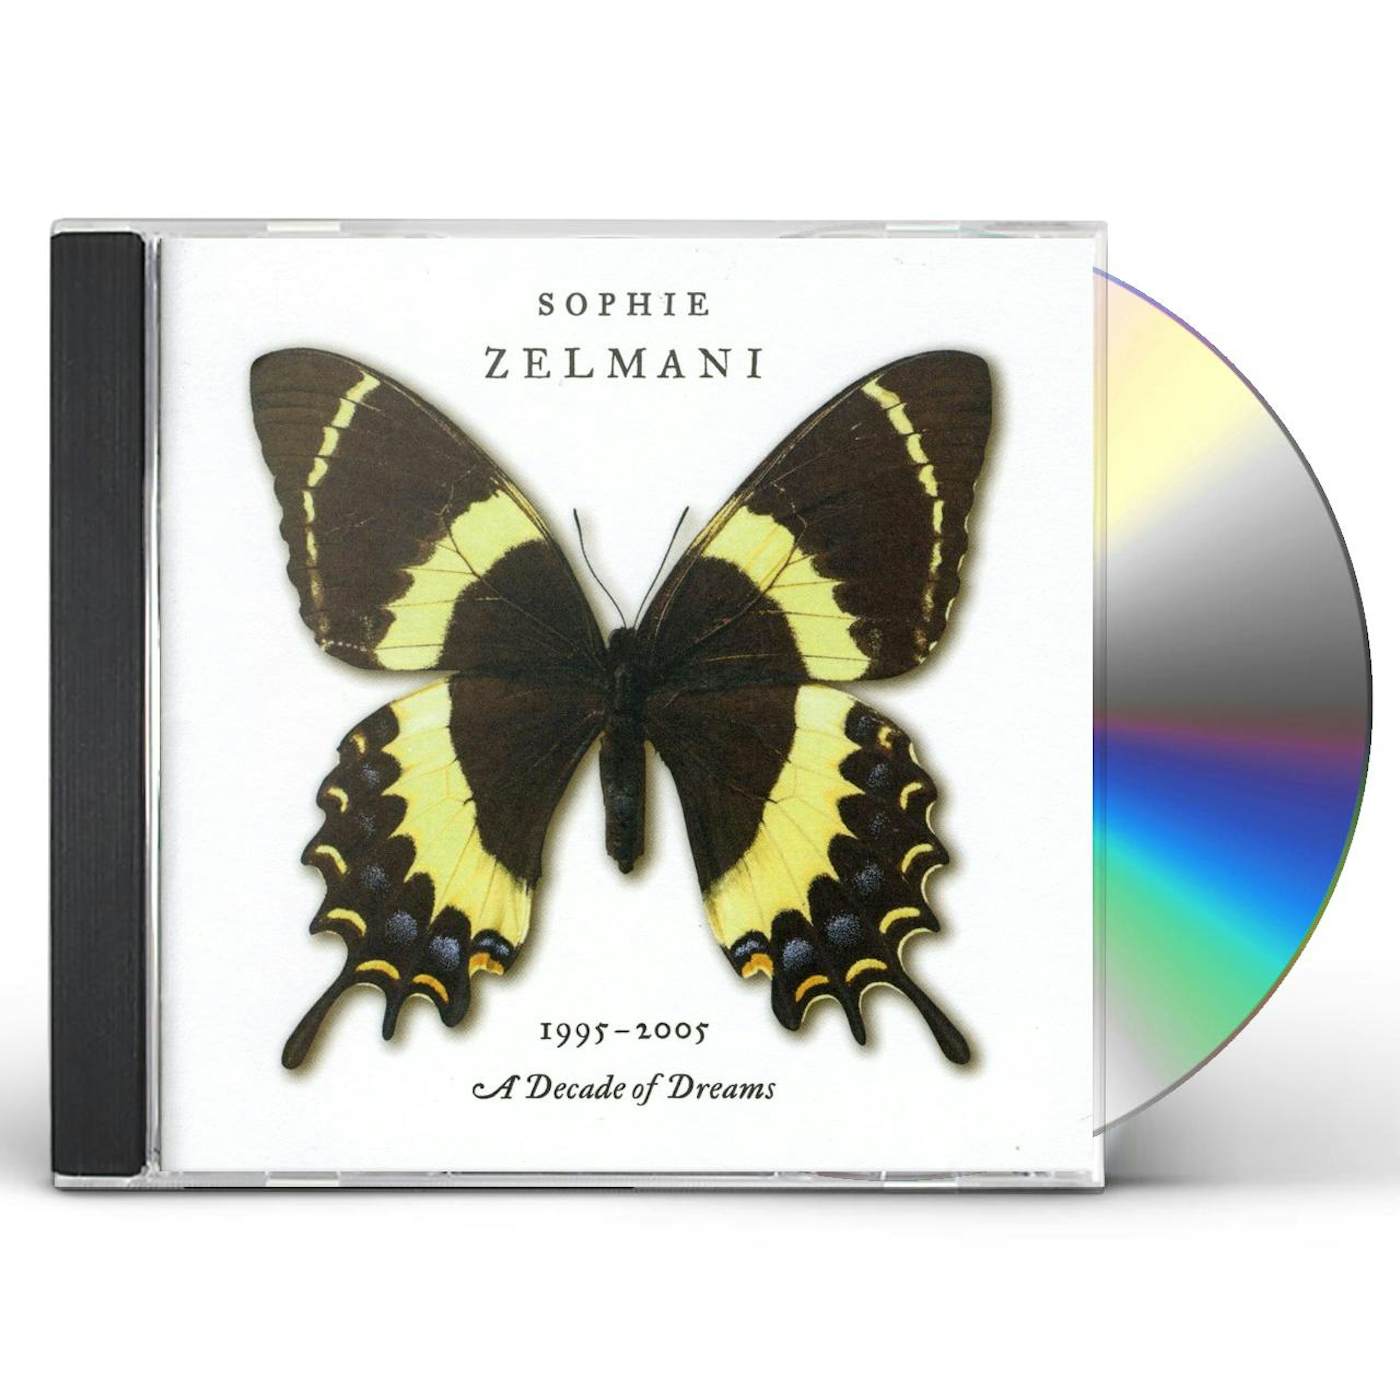 Sophie Zelmani DECADE OF DREAMS 1995-2005 CD